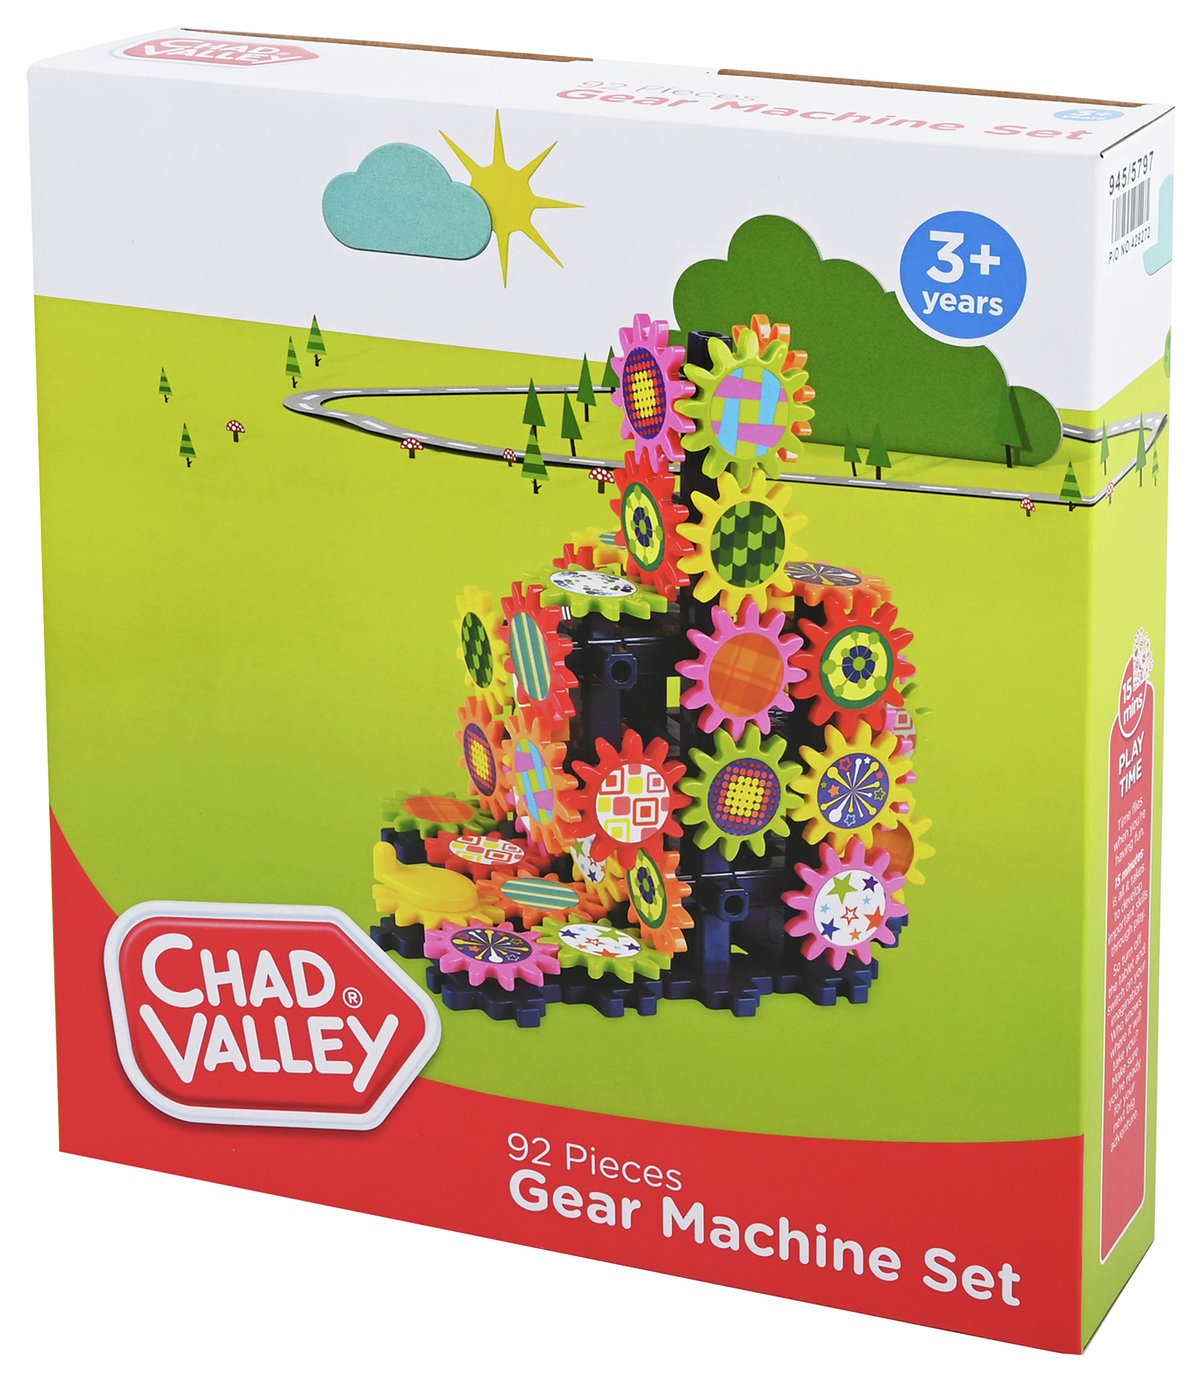 Chad Valley 92 Piece Gear Machine Set